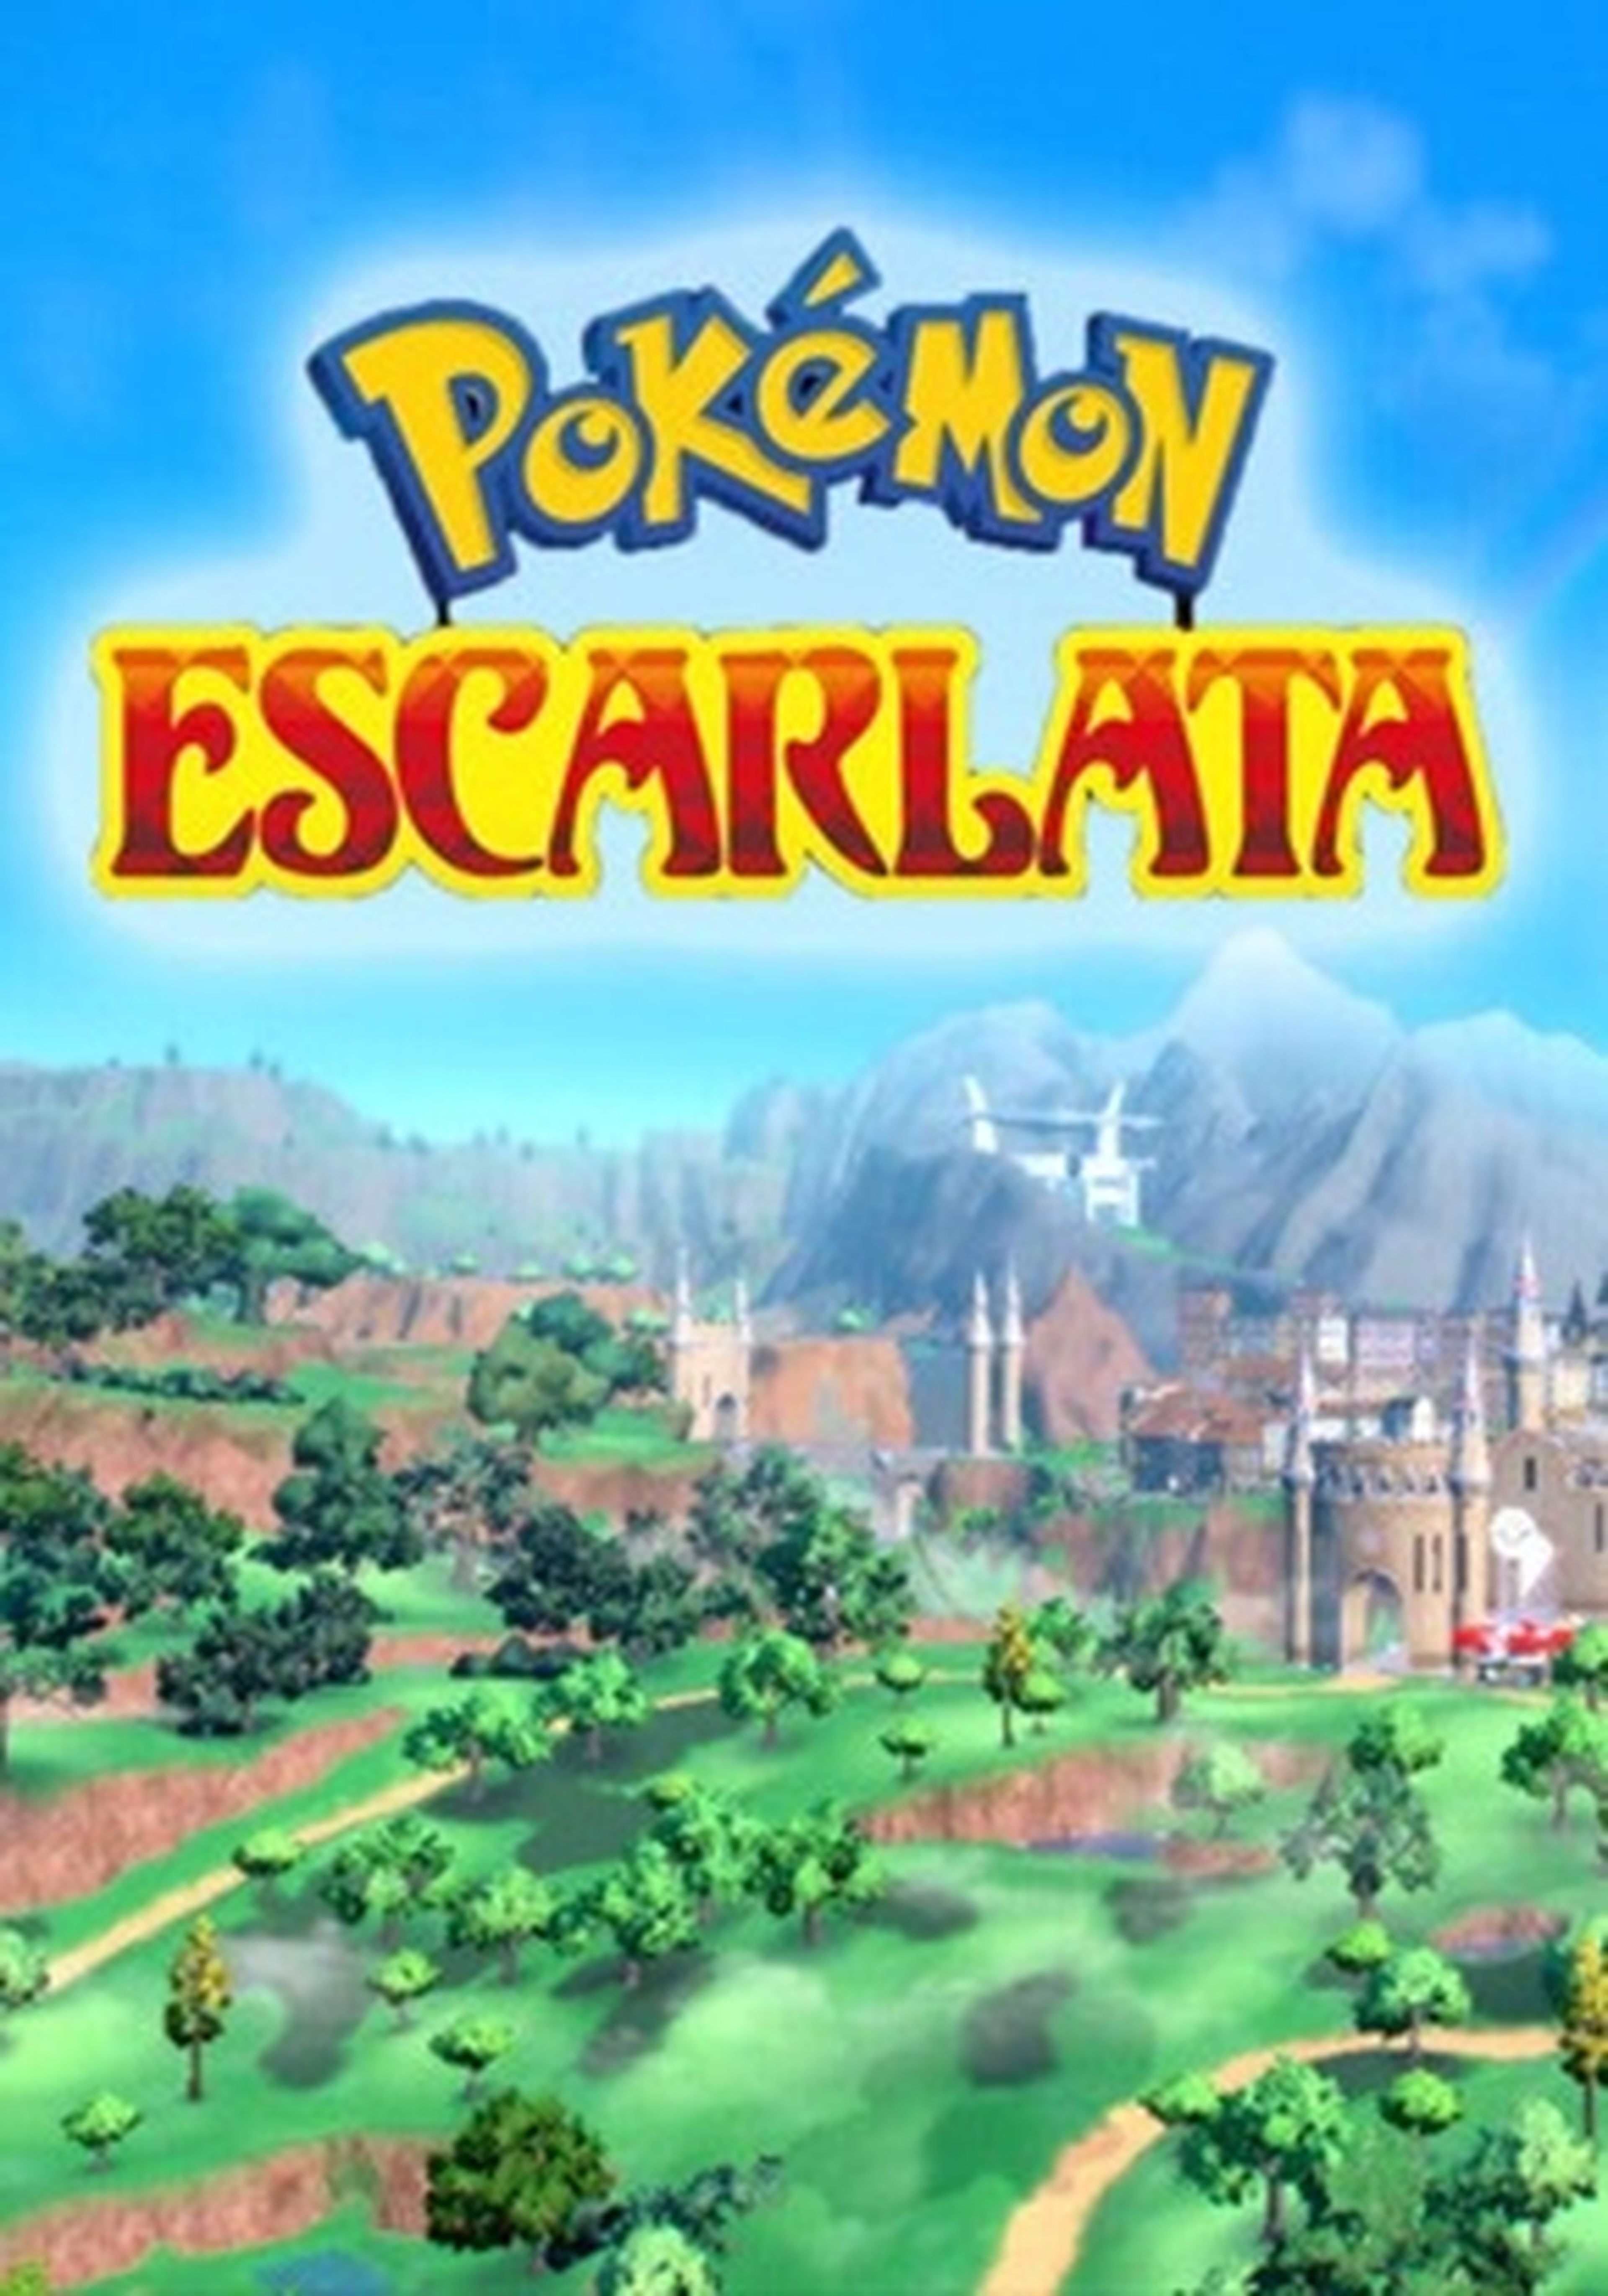 Pokémon Escarlata cartel